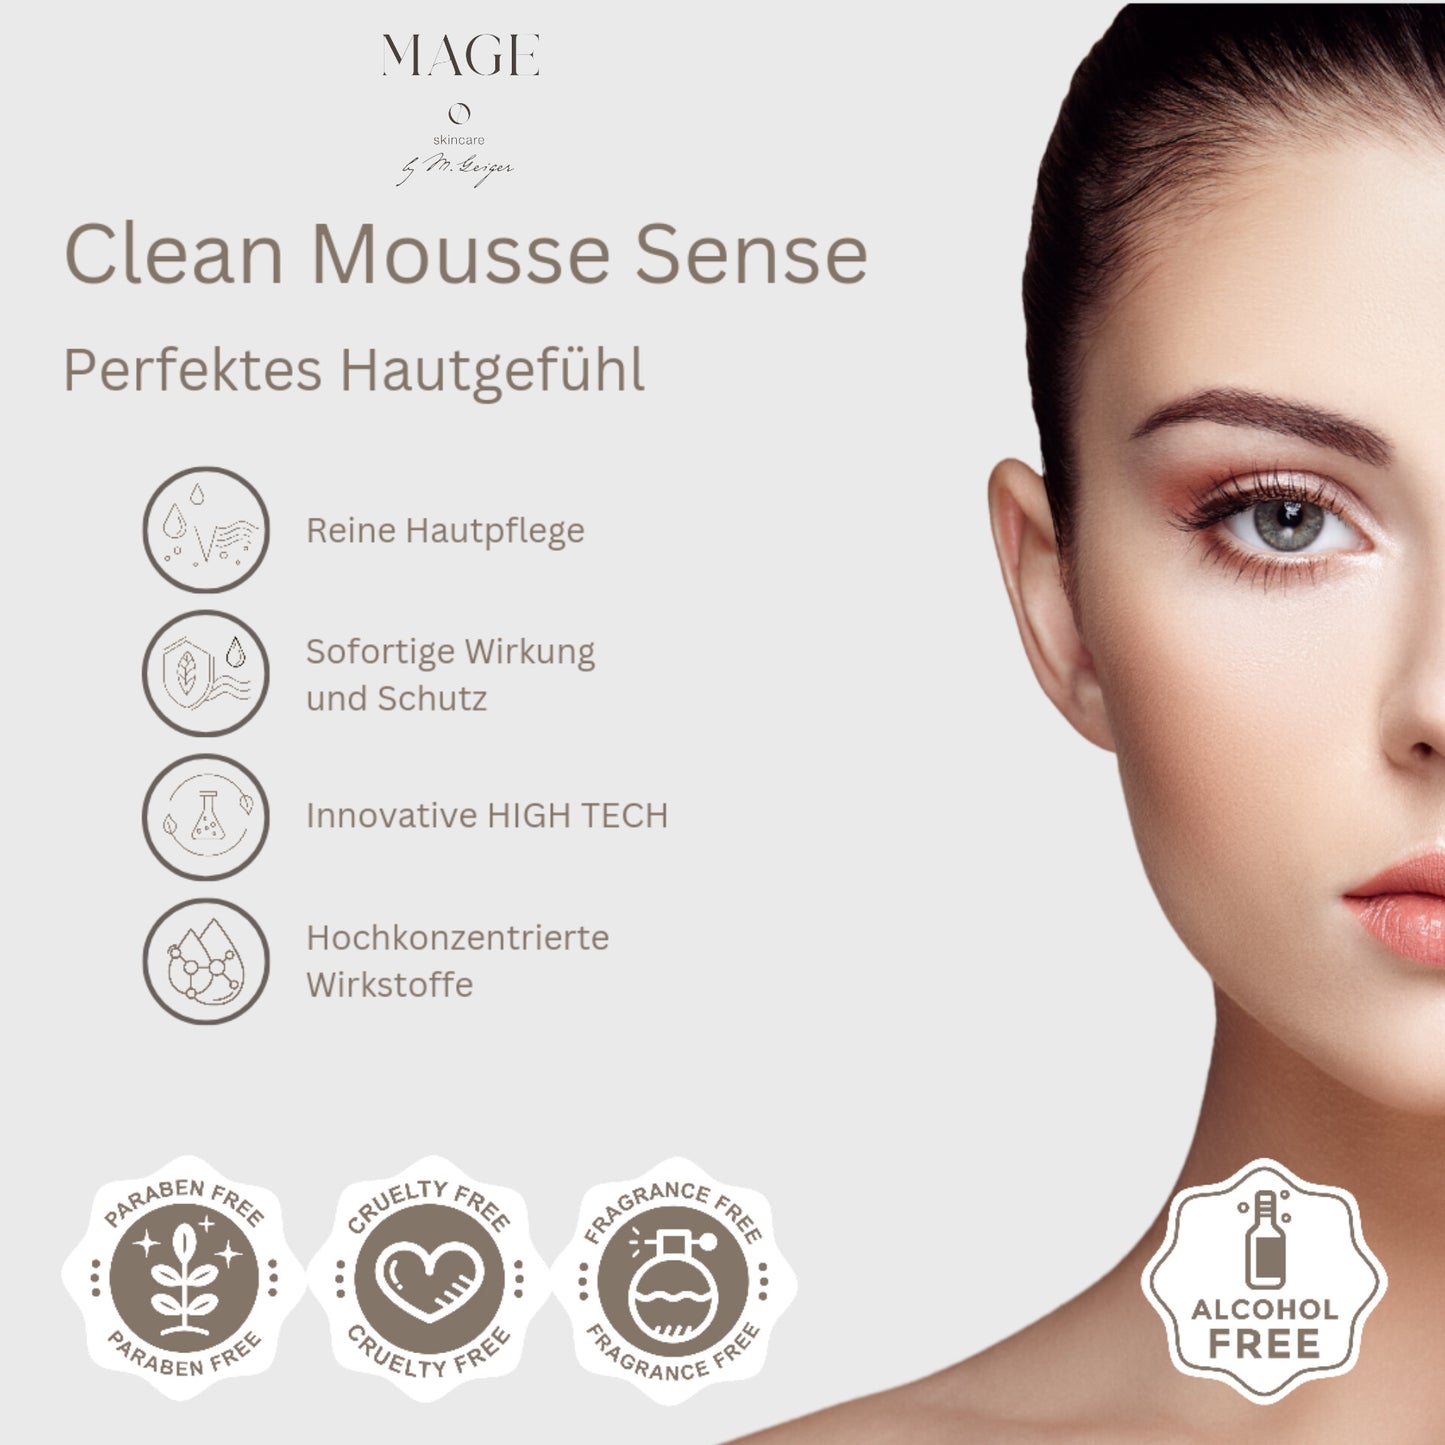 Clean Mousse Sense gleicht gestressten Hautton aus reinigt schonend und intensiv sensible Haut